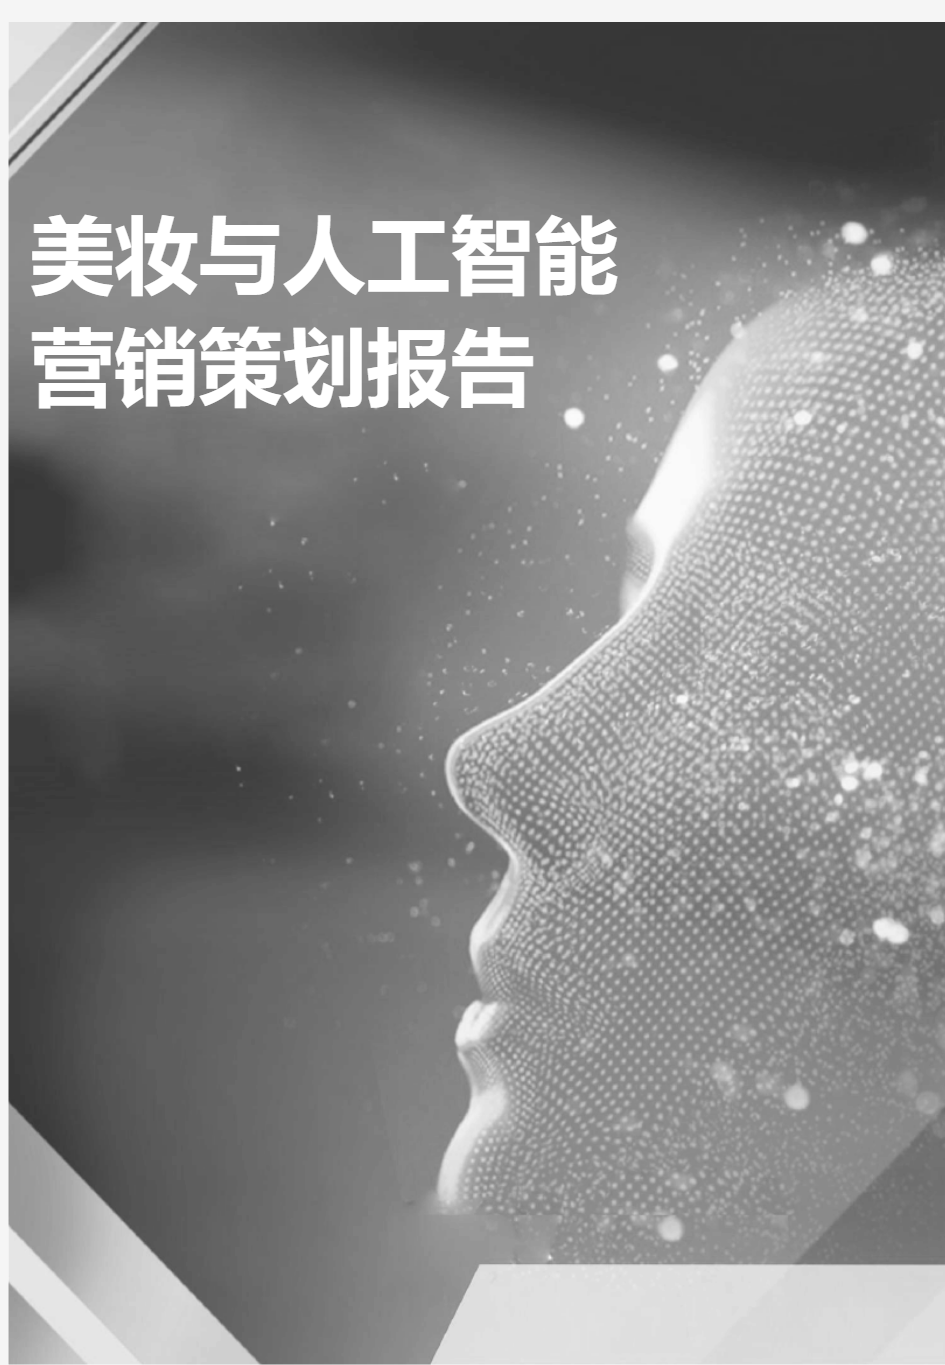 2020美妆与人工智能营销策划报告